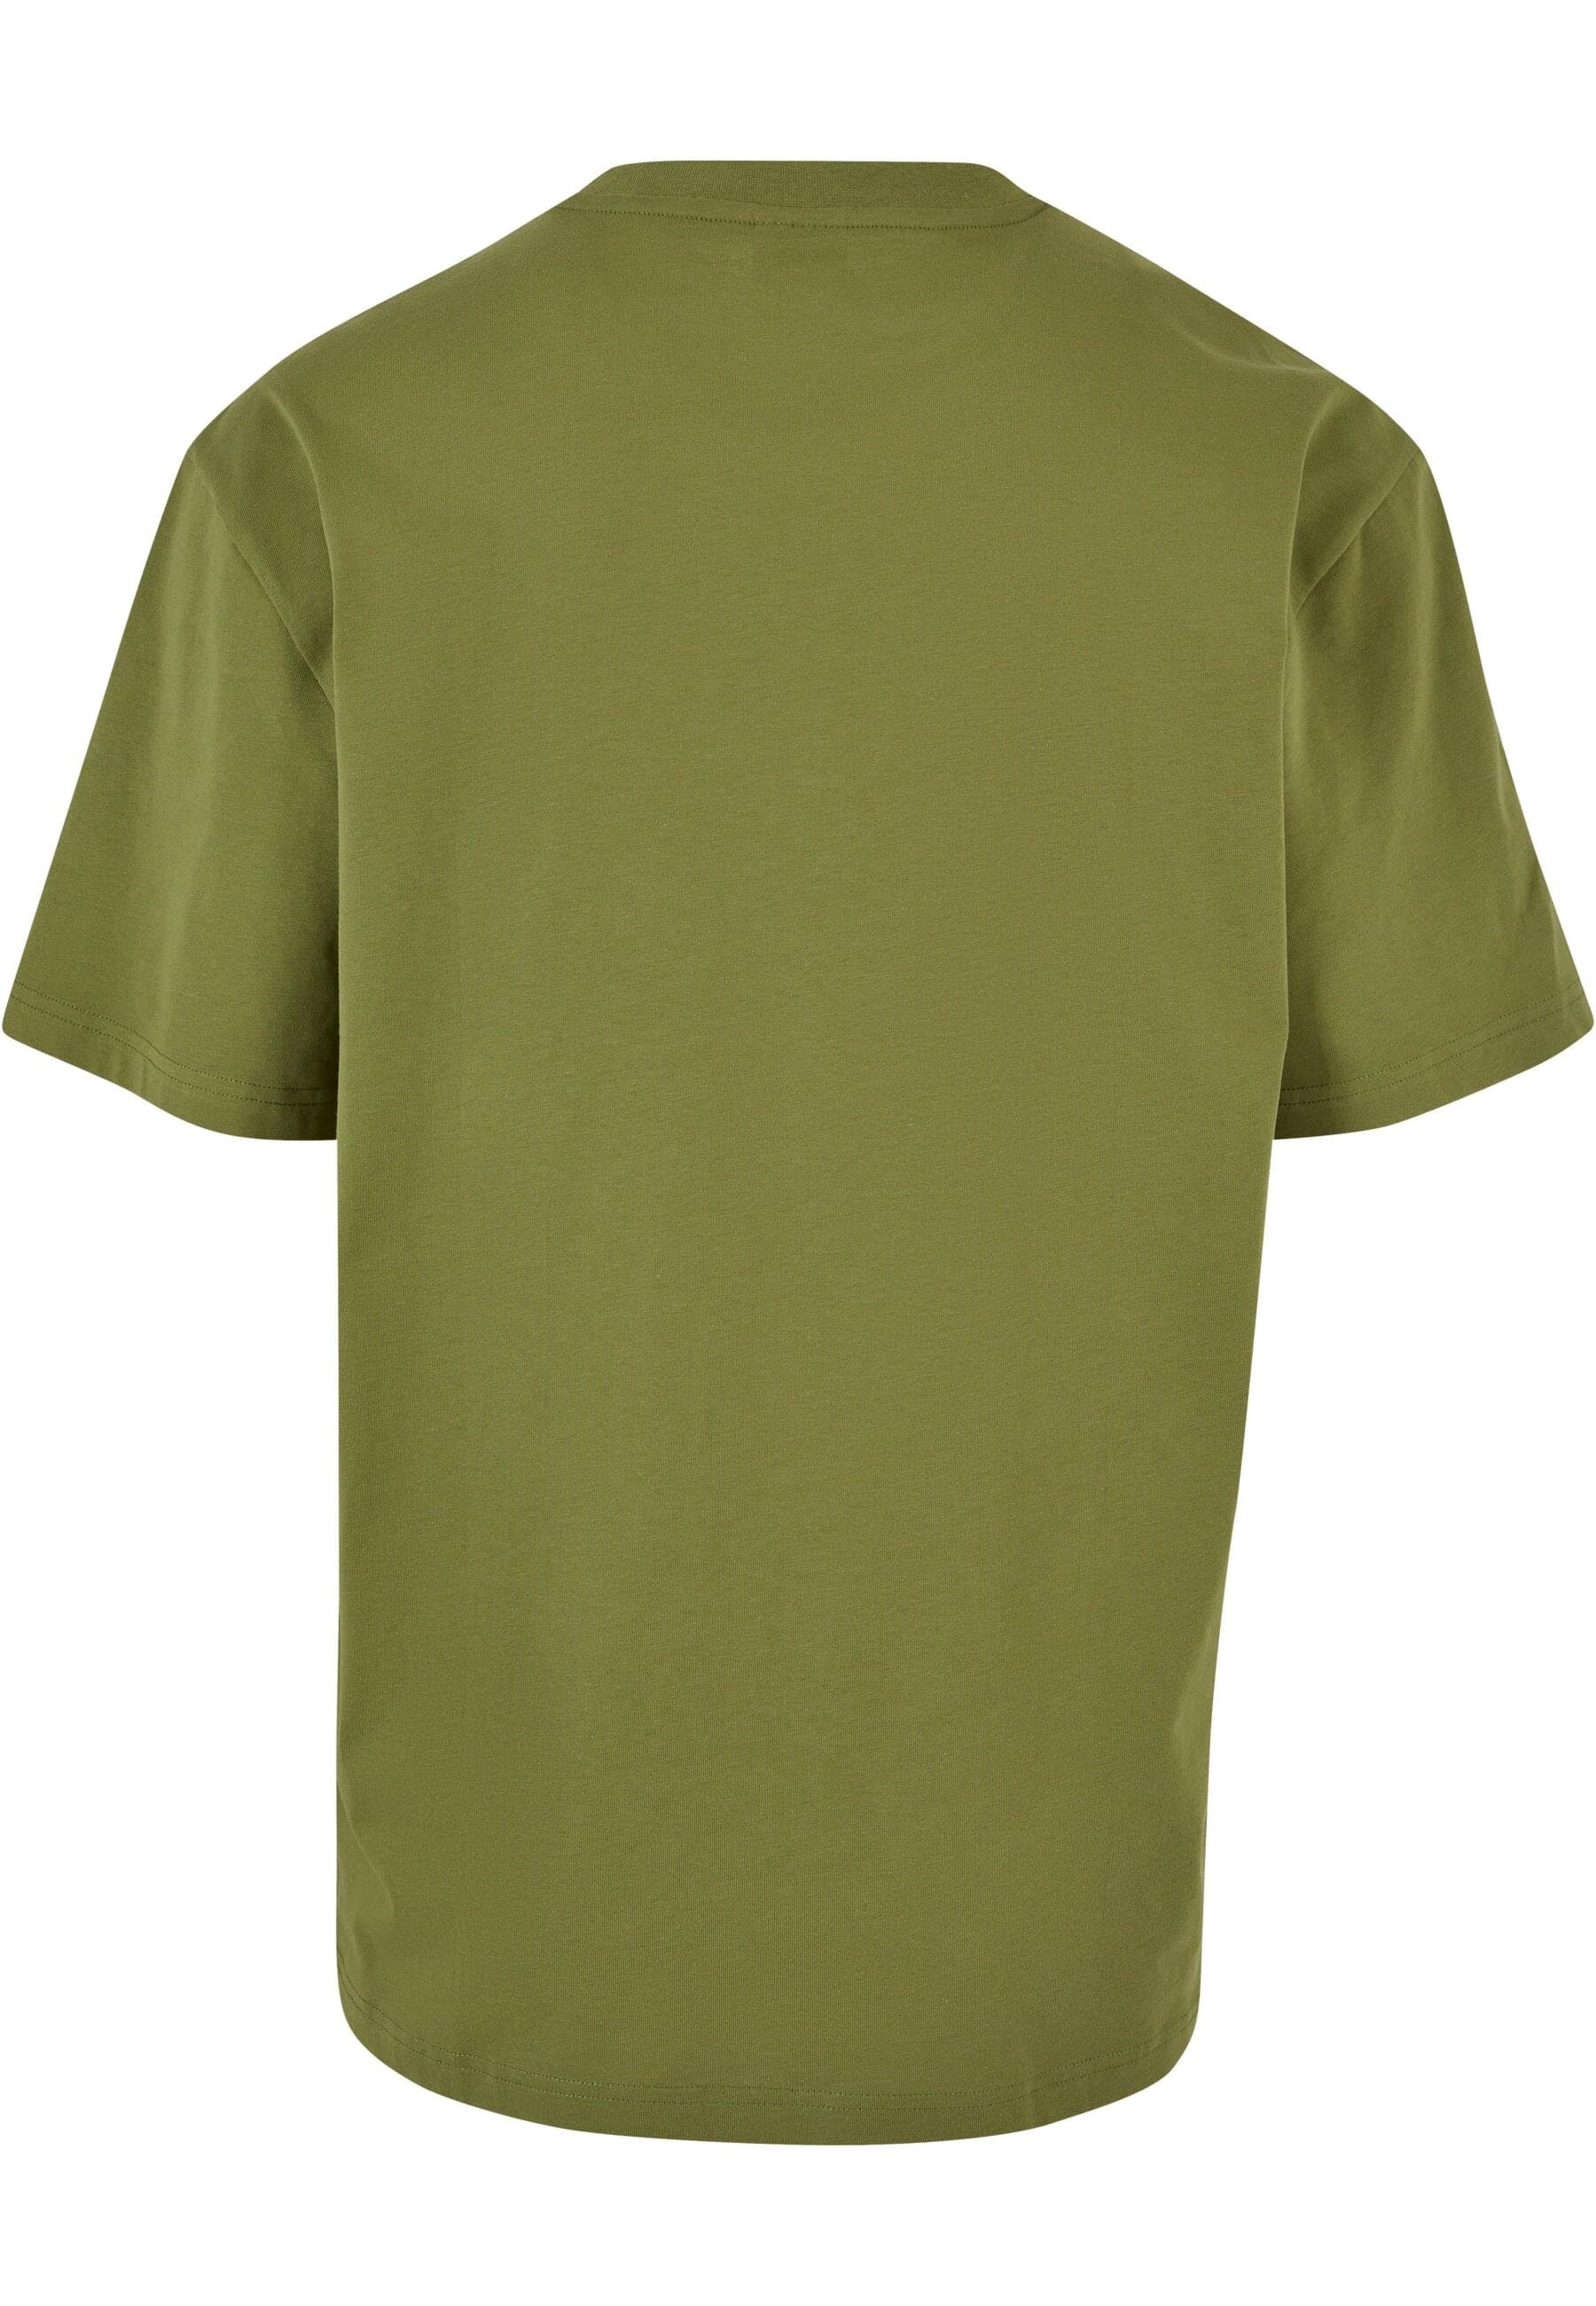 URBAN CLASSICS T-Shirt »Urban Classics Herren Organic Tall Tee«